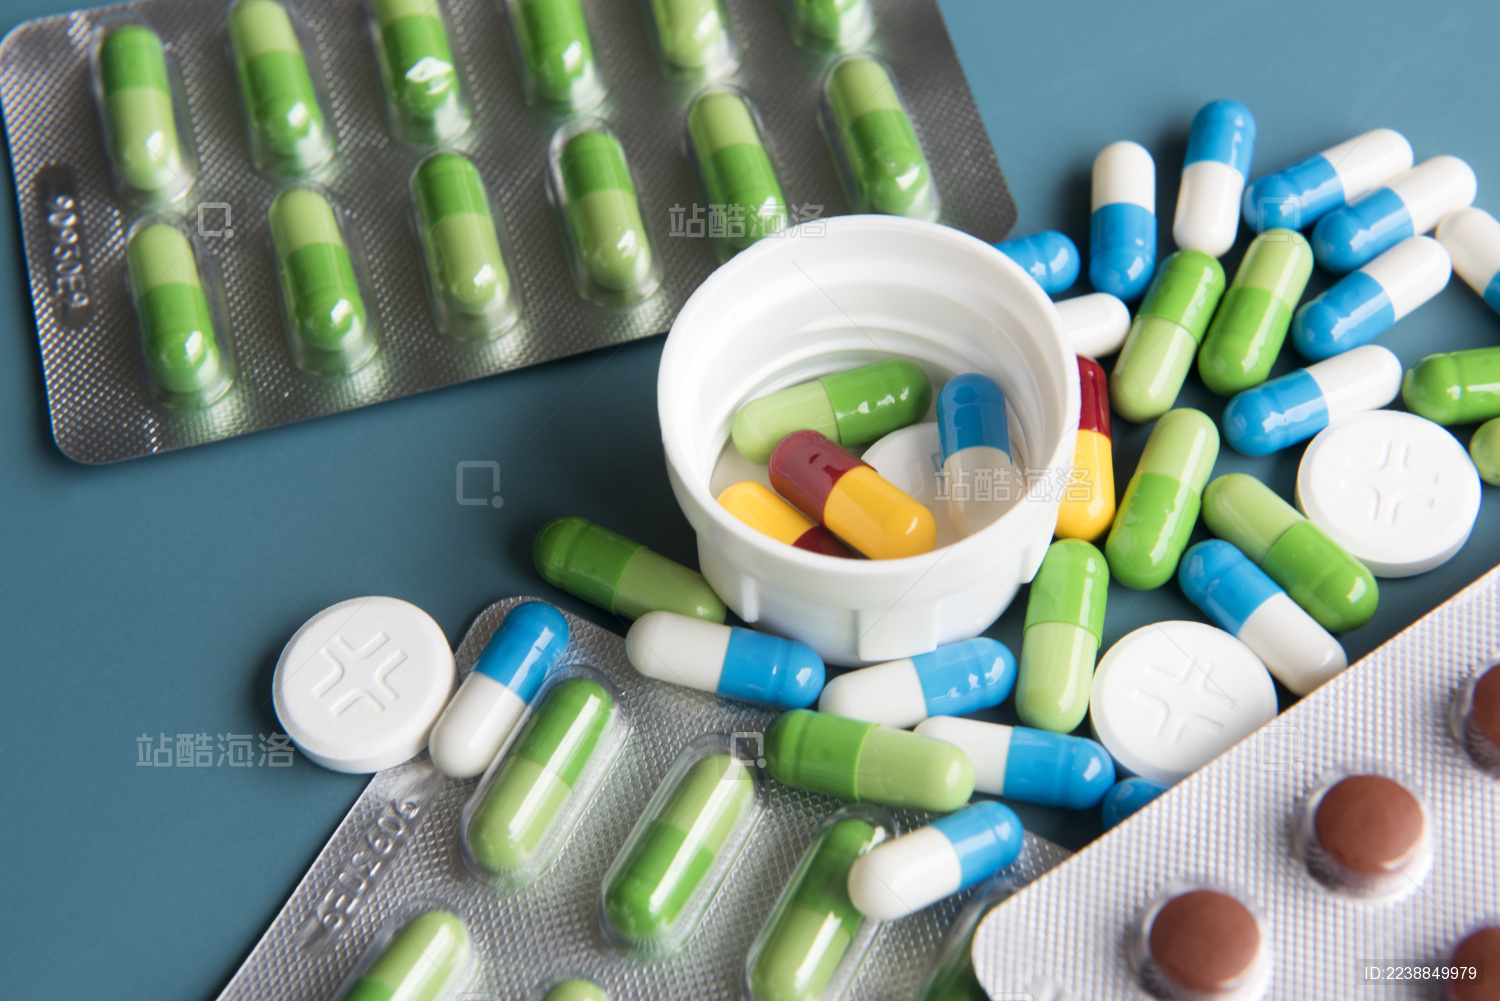 第六批国家药品集采中选结果于2022年5月实施 - 周到